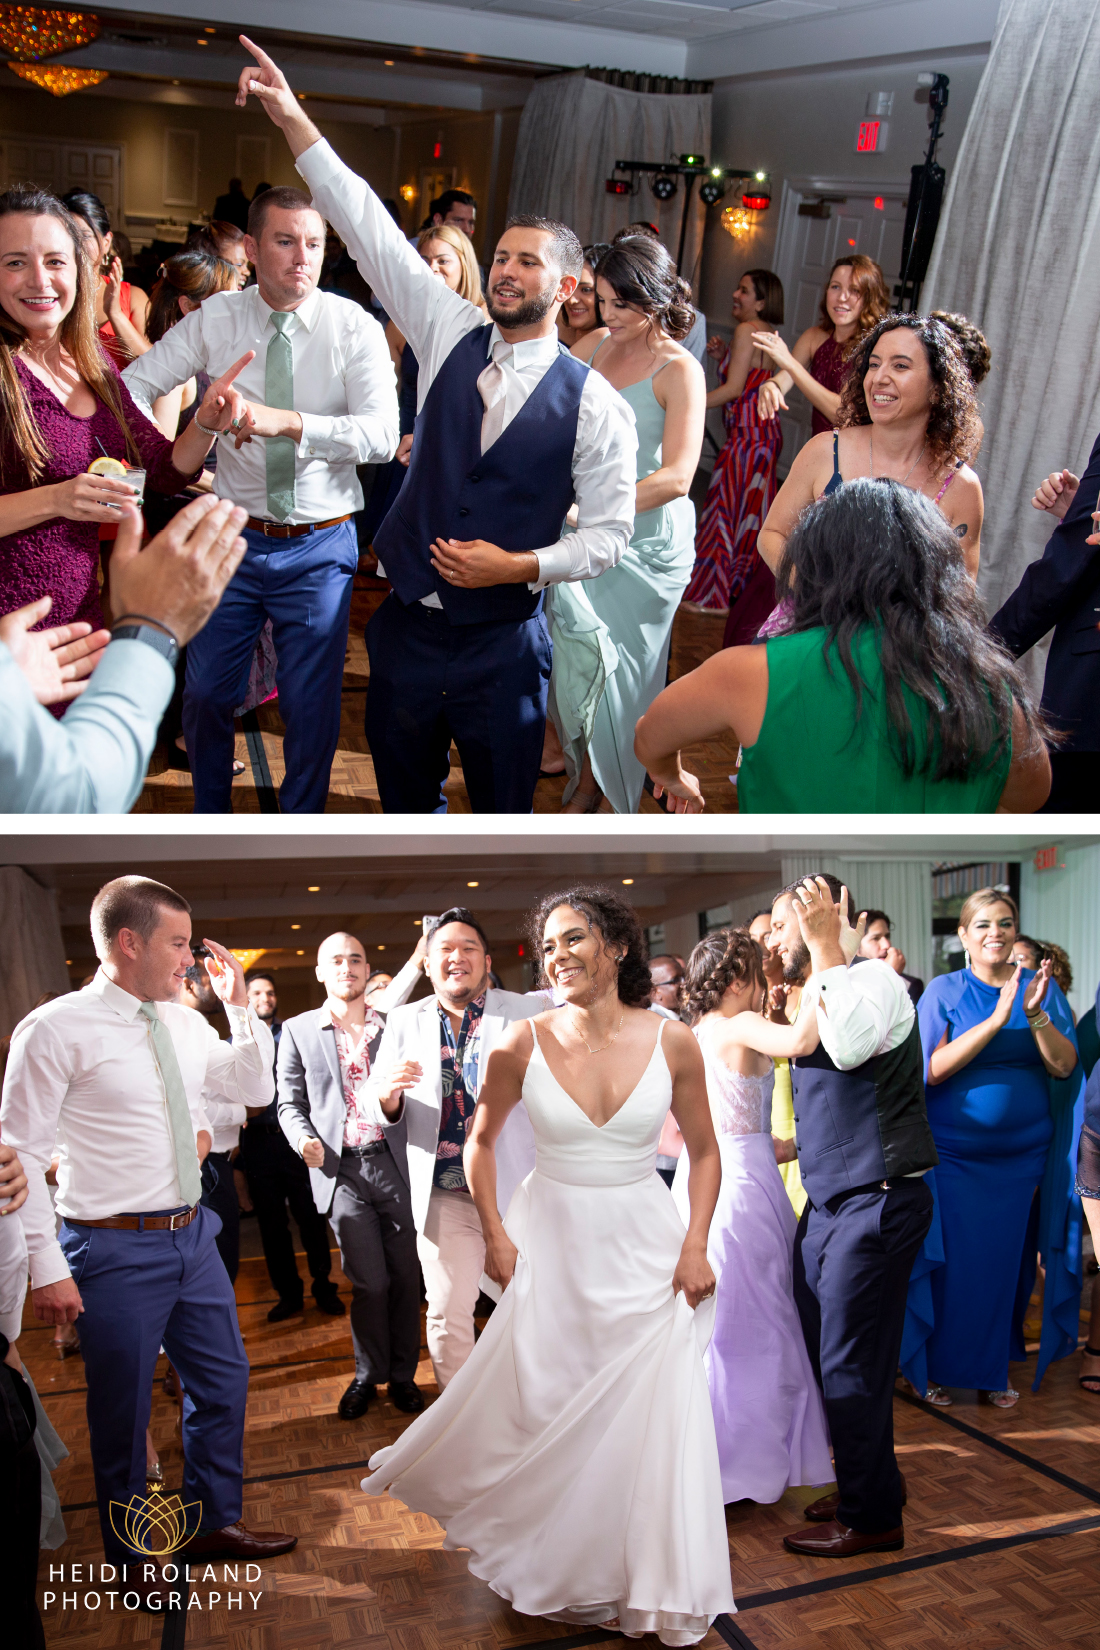 dancing with guests at ballroom wedding PA